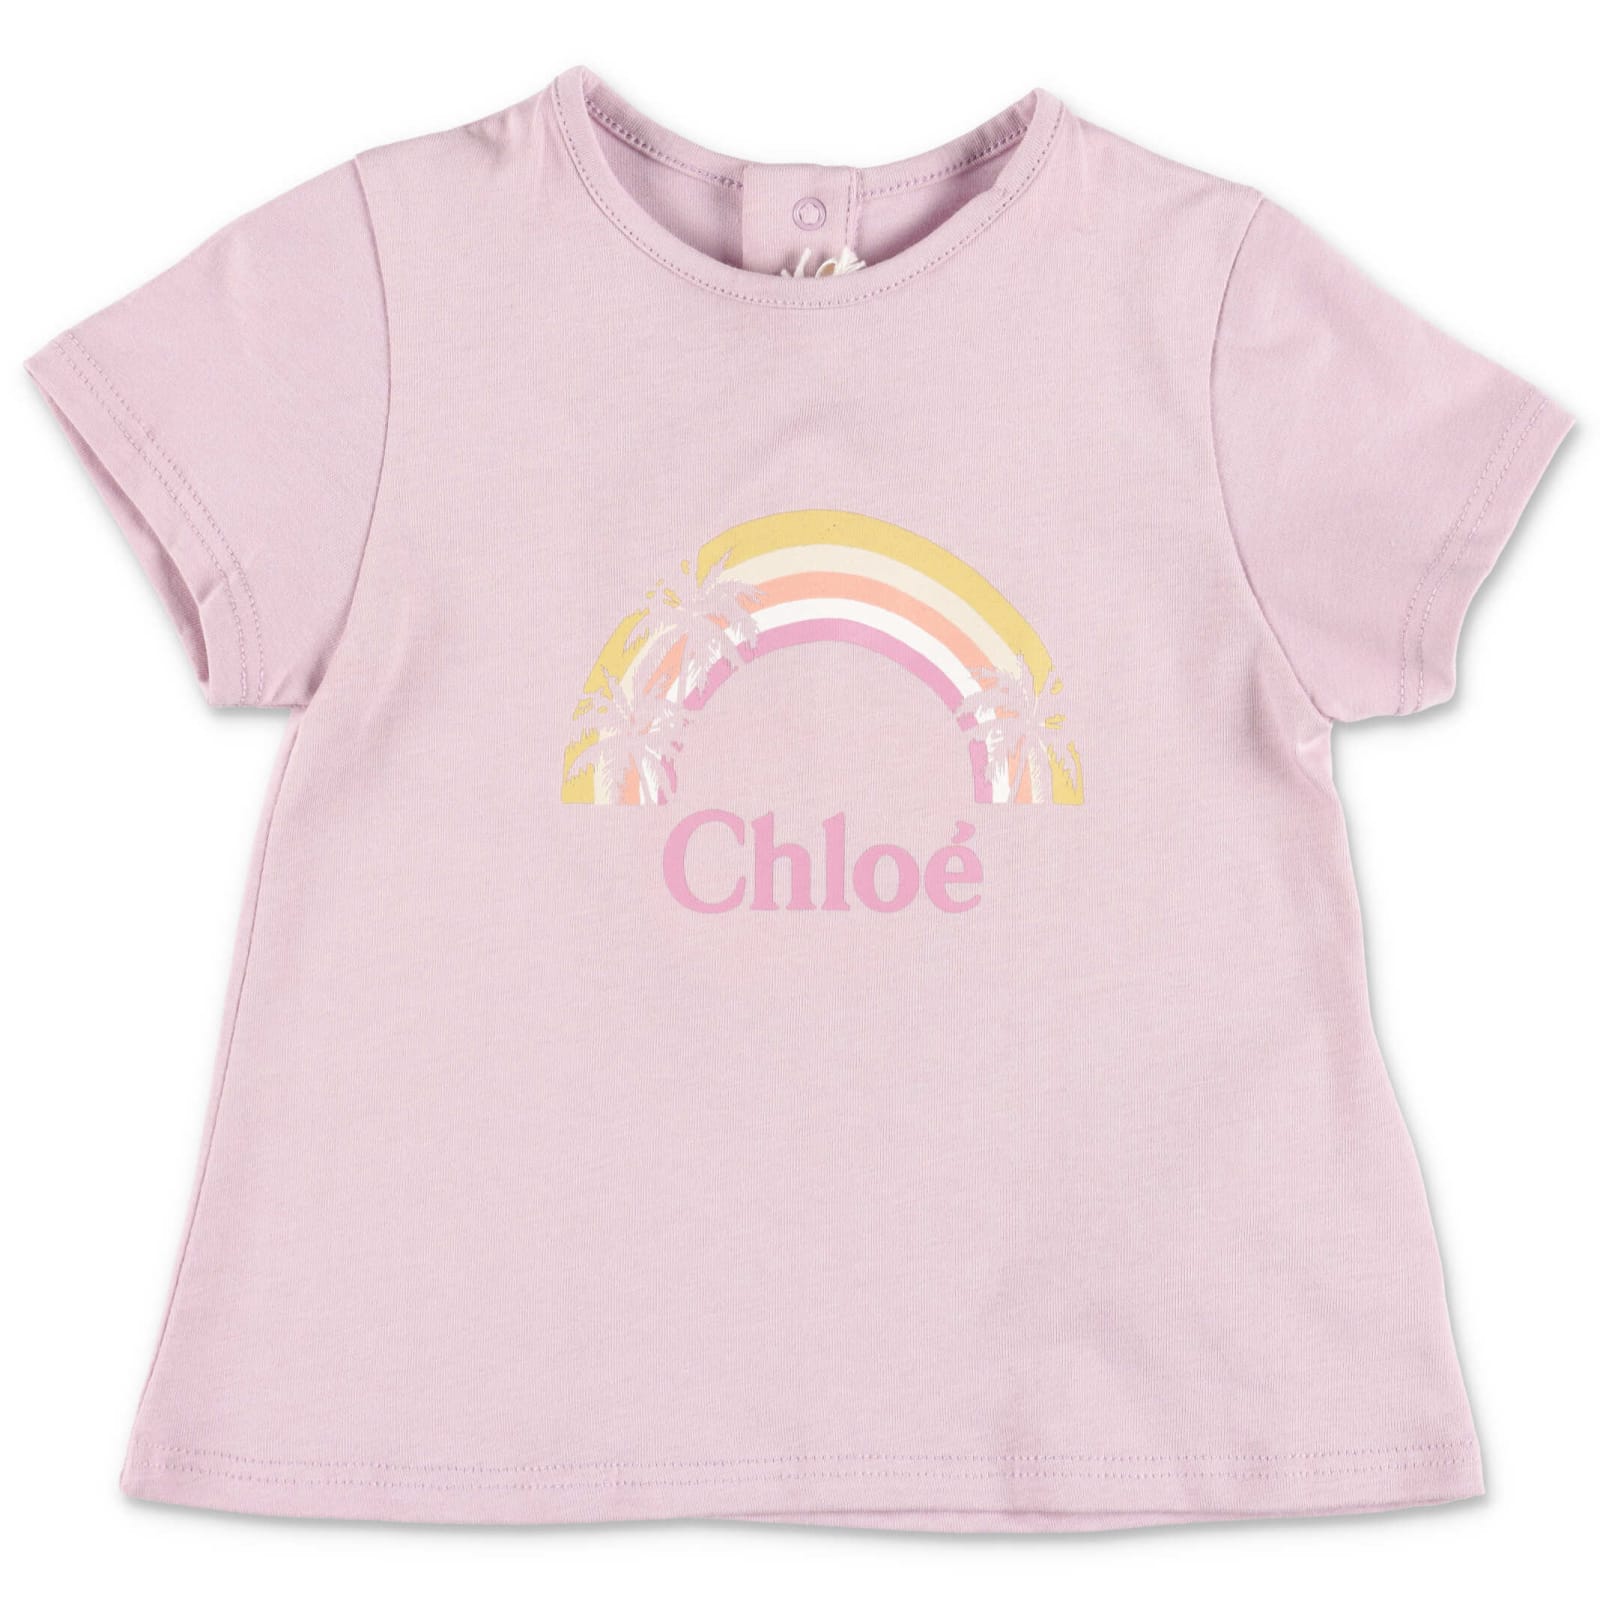 Chloé Chloe T-shirt Lilla In Jersey Di Cotone